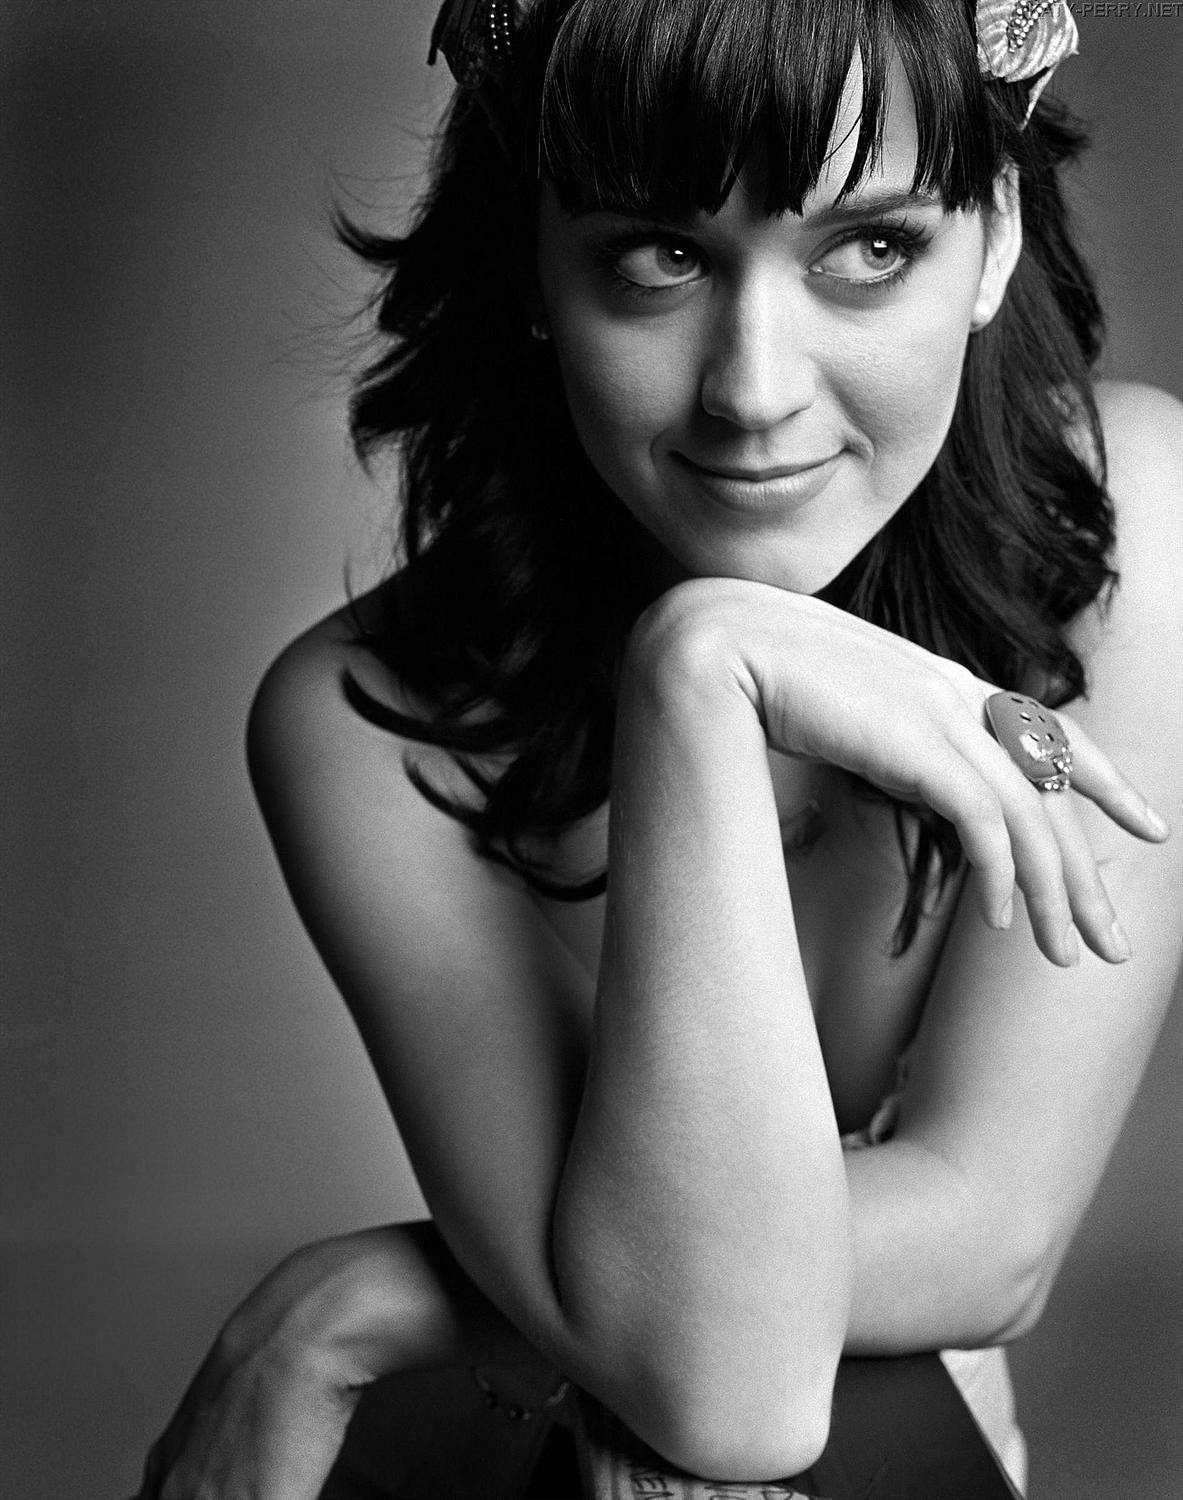 Katy Perry in bianco e nero